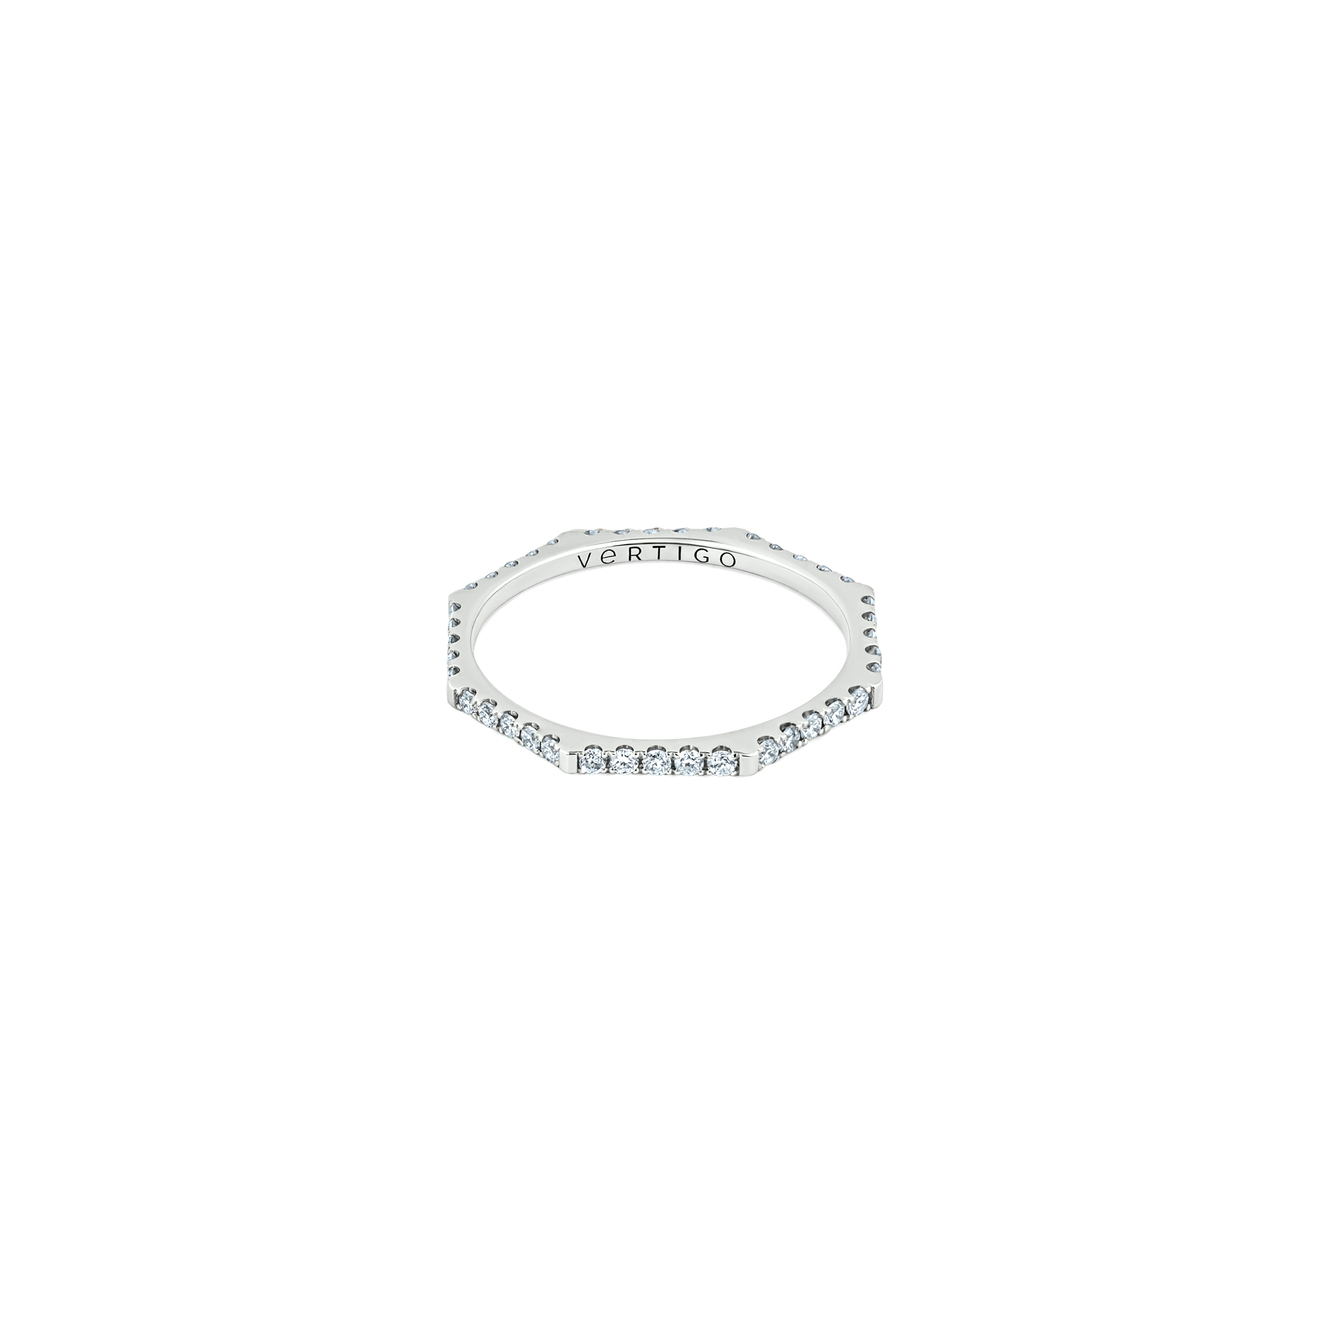 Vertigo Jewellery Lab Кольцо HEXO diamond из белого золота с дорожой из бриллиантов vertigo jewellery lab кольцо hexo из белого золота с топазом авторской огранки